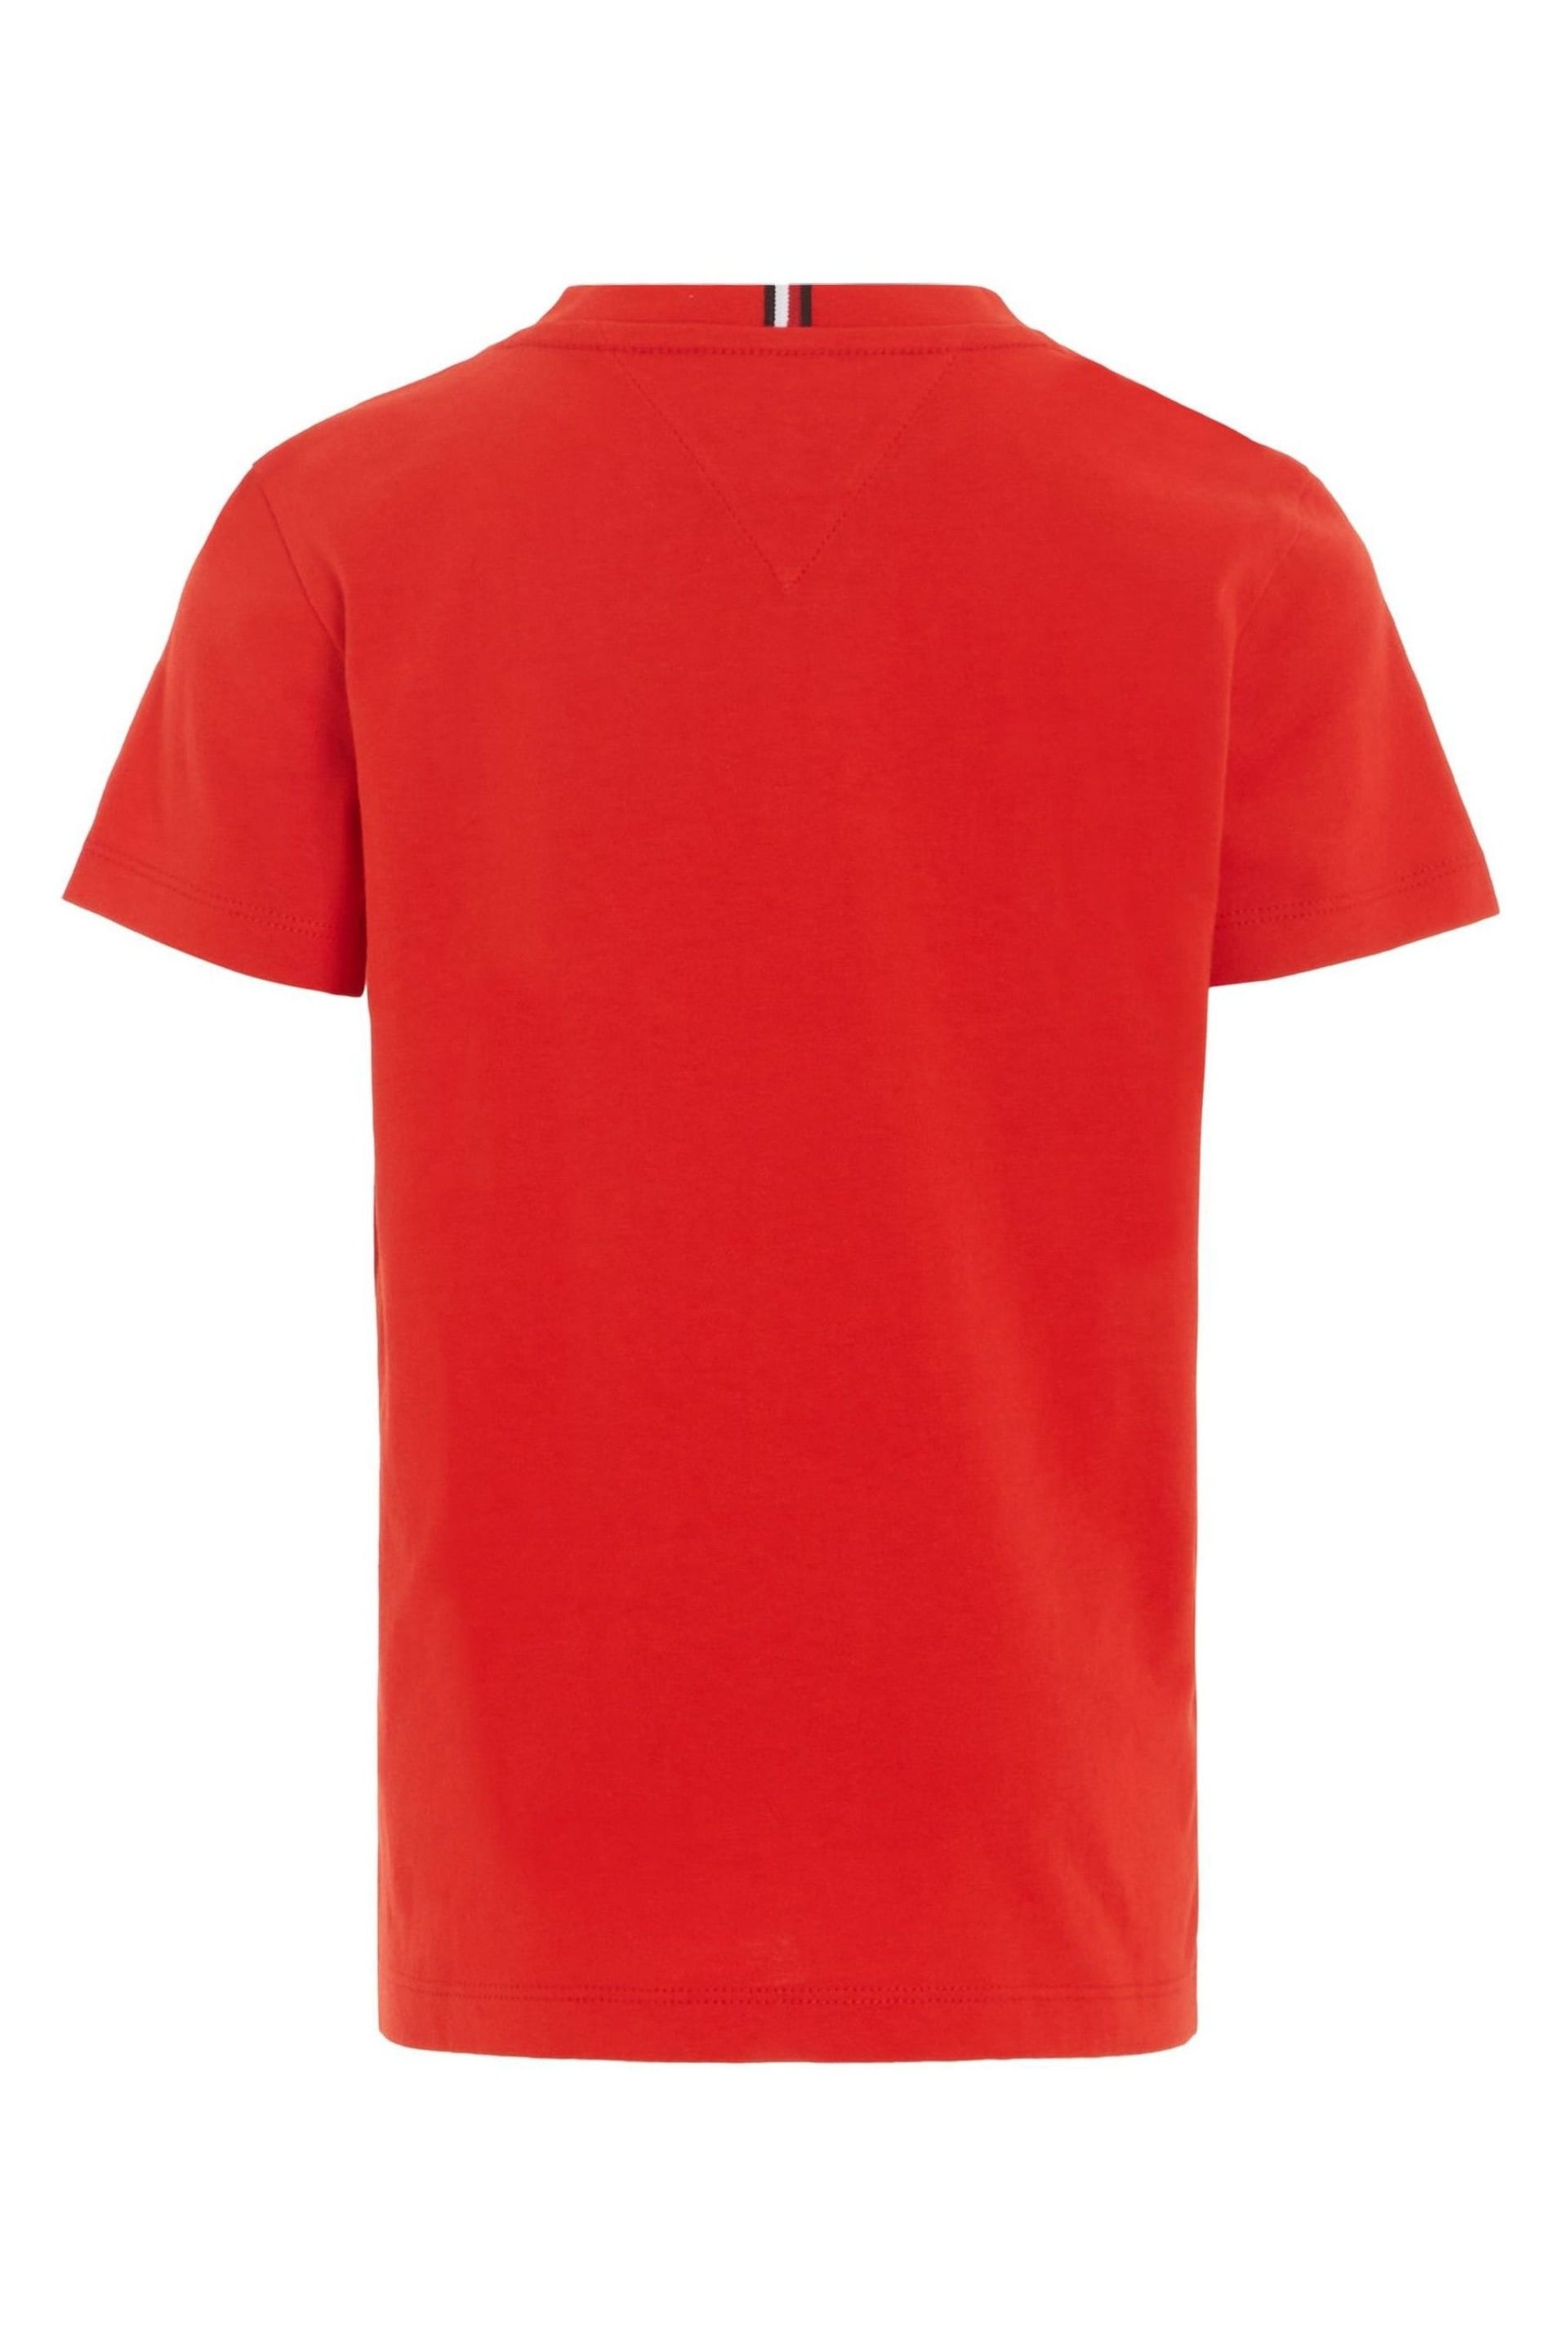 Tommy Hilfiger Hilfiger Track T-Shirt - Image 5 of 6